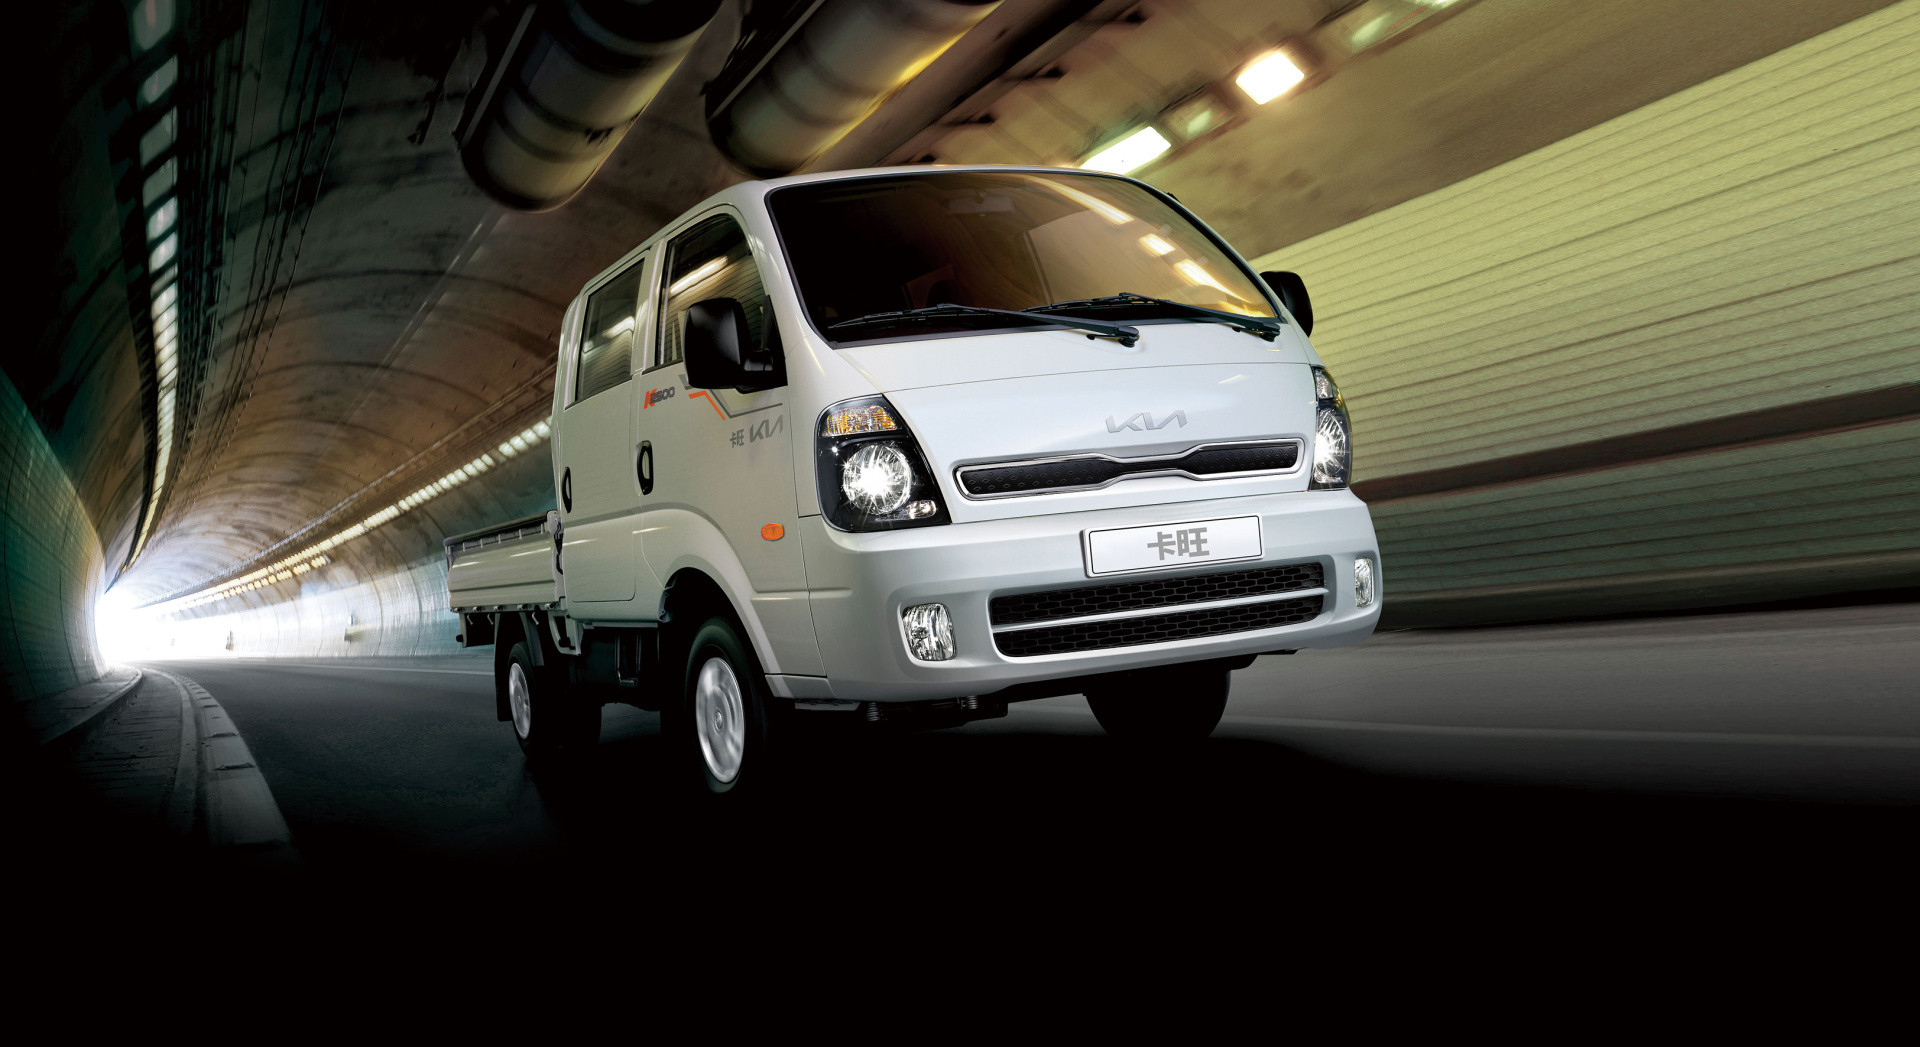 SMALL_2. Kia商用車卡旺K2500以多元車型選擇、 強大承載能力、完善主被動安全配備滿足各行各業頭家需求。